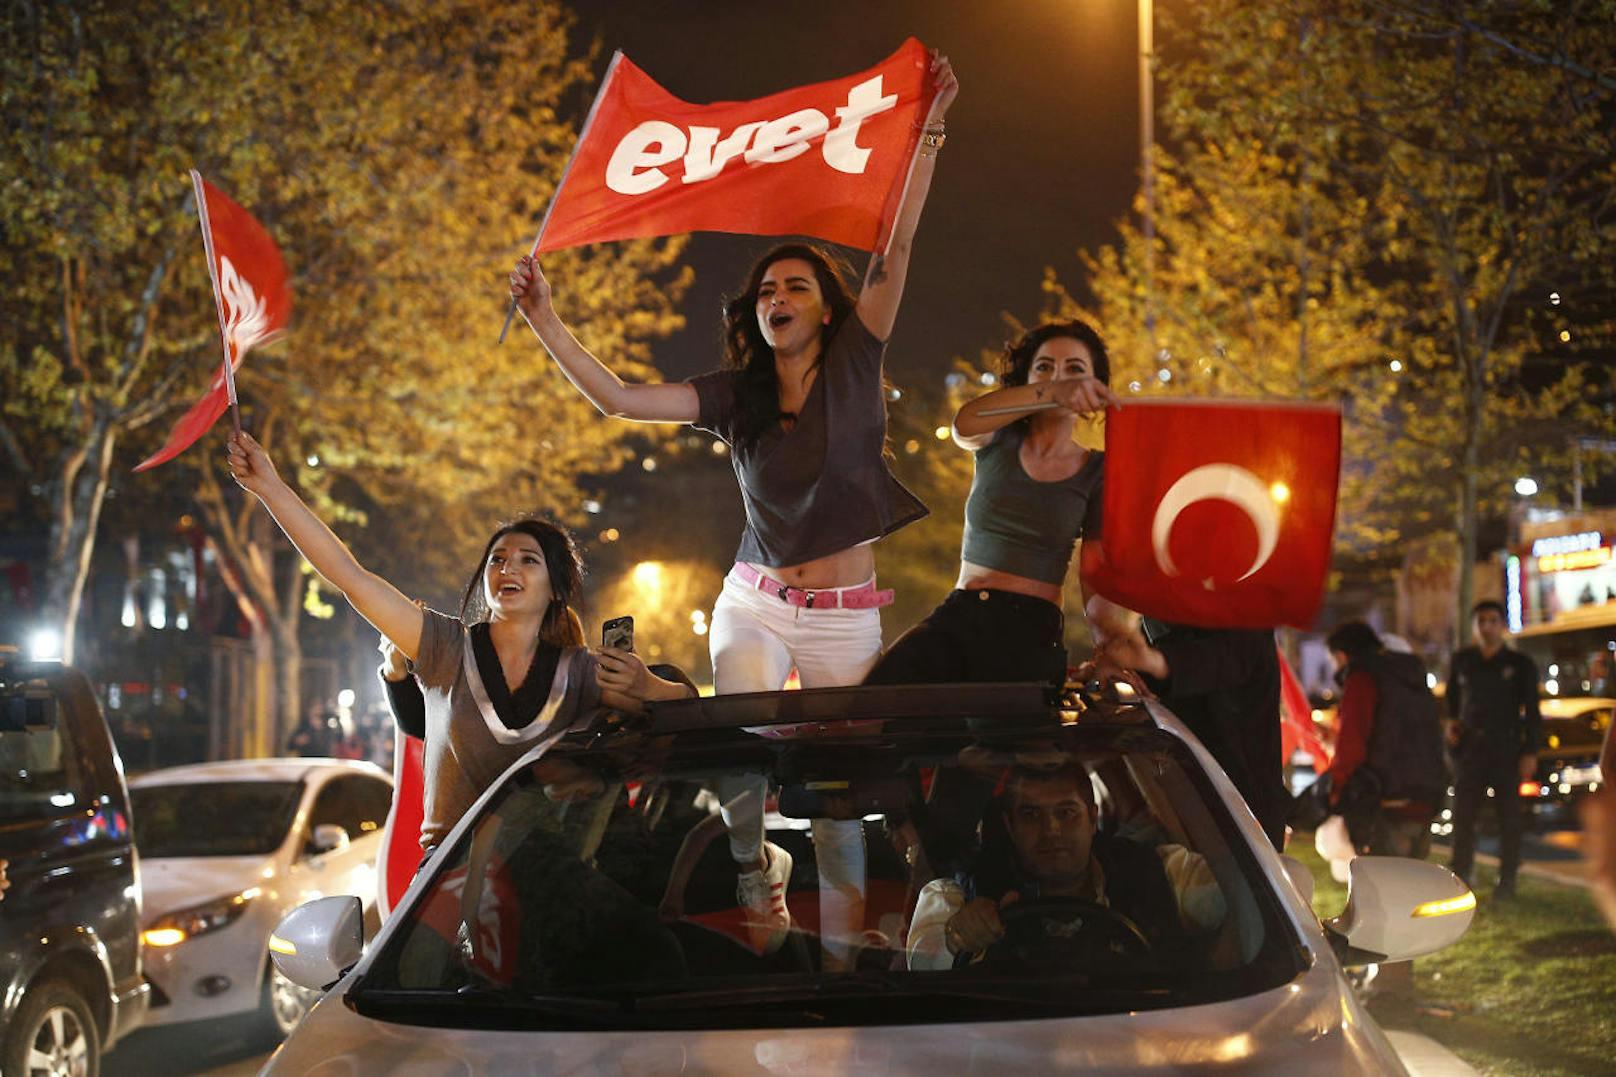 Am Sonntag fand in der Türkei das mit Spannung erwartete Verfassungsreferendum statt. Auch Millionen im Ausland lebende Türken haben im Zuge des Verfassungsreferendums in der Türkei ihre Stimmen abgegeben. Dessen knapper Ausgang (51,4 % für "Ja") zeigt nun: Ausgerechnet sie dürften das Zünglein an der Wage ausgemacht haben, das Erdogan zum Sieg verholfen hat. Brisant: In Wien stimmten 74,6 Prozent für Staatspräsident Erdogan - mehr, als in vielen türkischen Städten! <a href="https://www.heute.at/welt/news/story/In-Wien-mehr--Ja-Sager--als-in-tuerkischen-Staedten-57138951">Hier Story nachlesen</a>